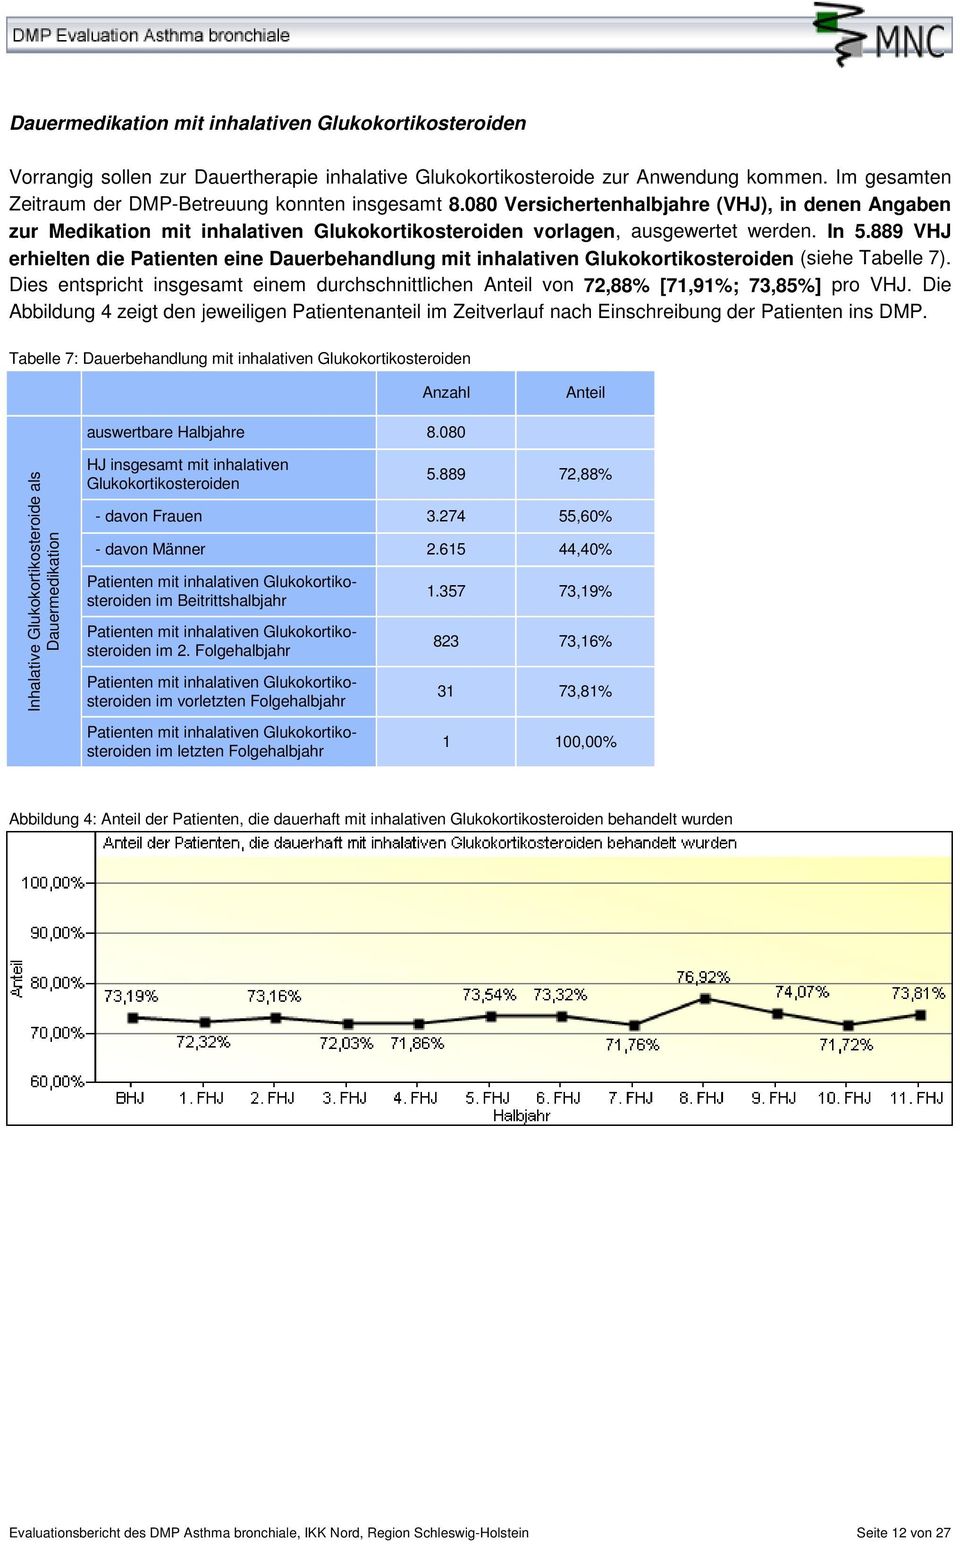 889 VHJ erhielten die Patienten eine Dauerbehandlung mit inhalativen Glukokortikosteroiden (siehe Tabelle 7). Dies entspricht insgesamt einem durchschnittlichen von 72,88% [71,91%; 73,85%] pro VHJ.